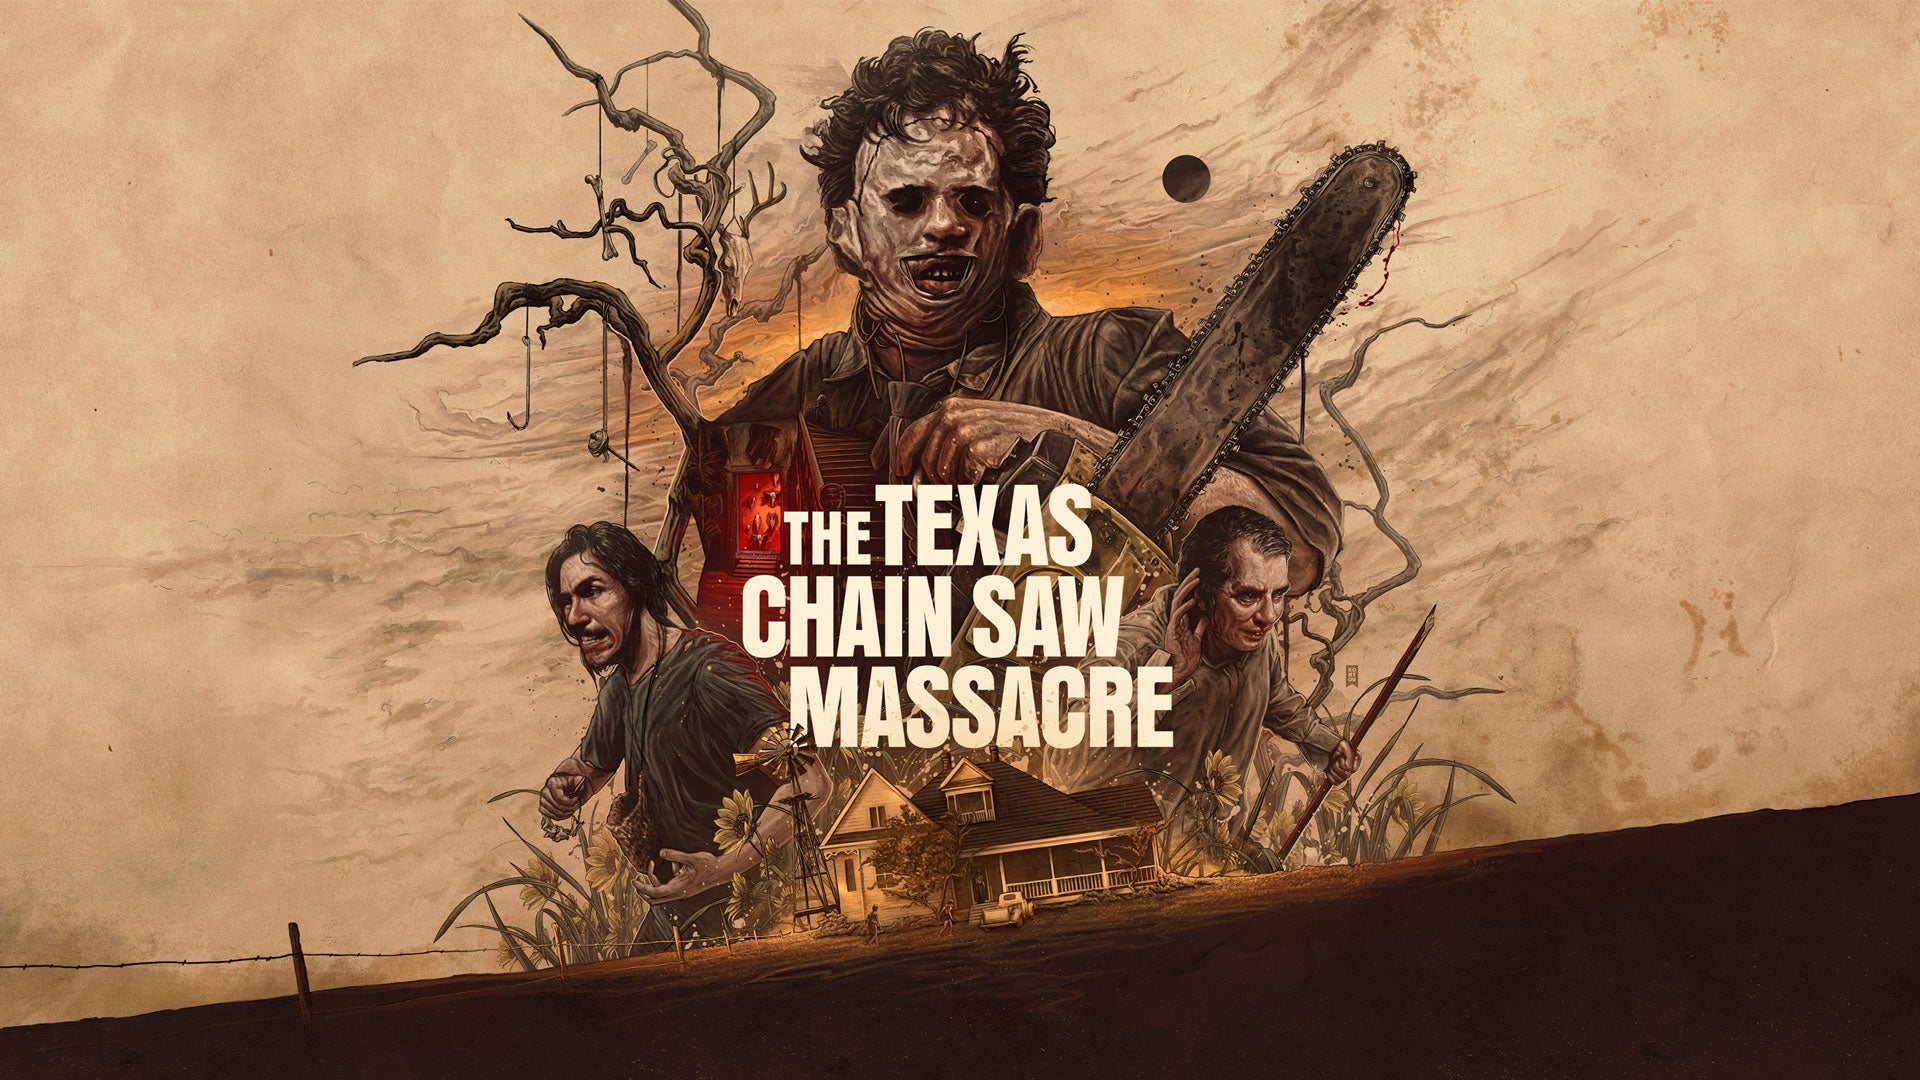 Imagem para Texas Chain Saw Massacre ganha data de lançamento em novo trailer